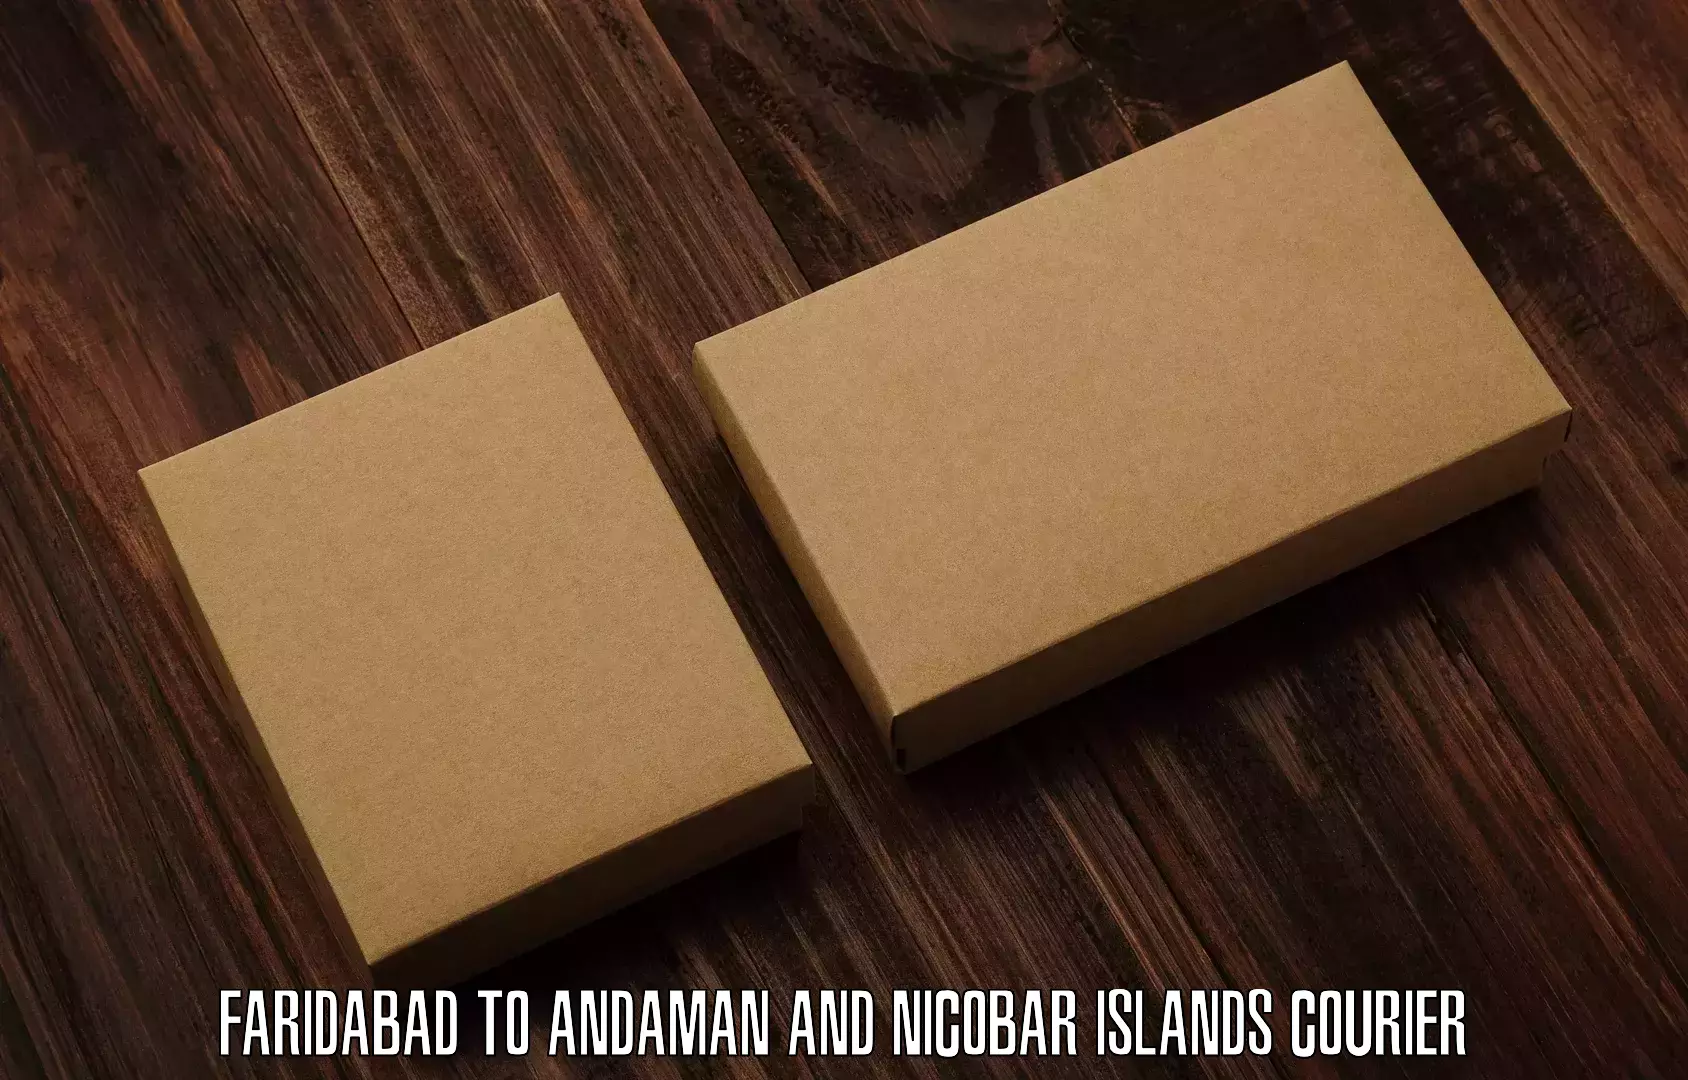 Global shipping networks Faridabad to Nicobar